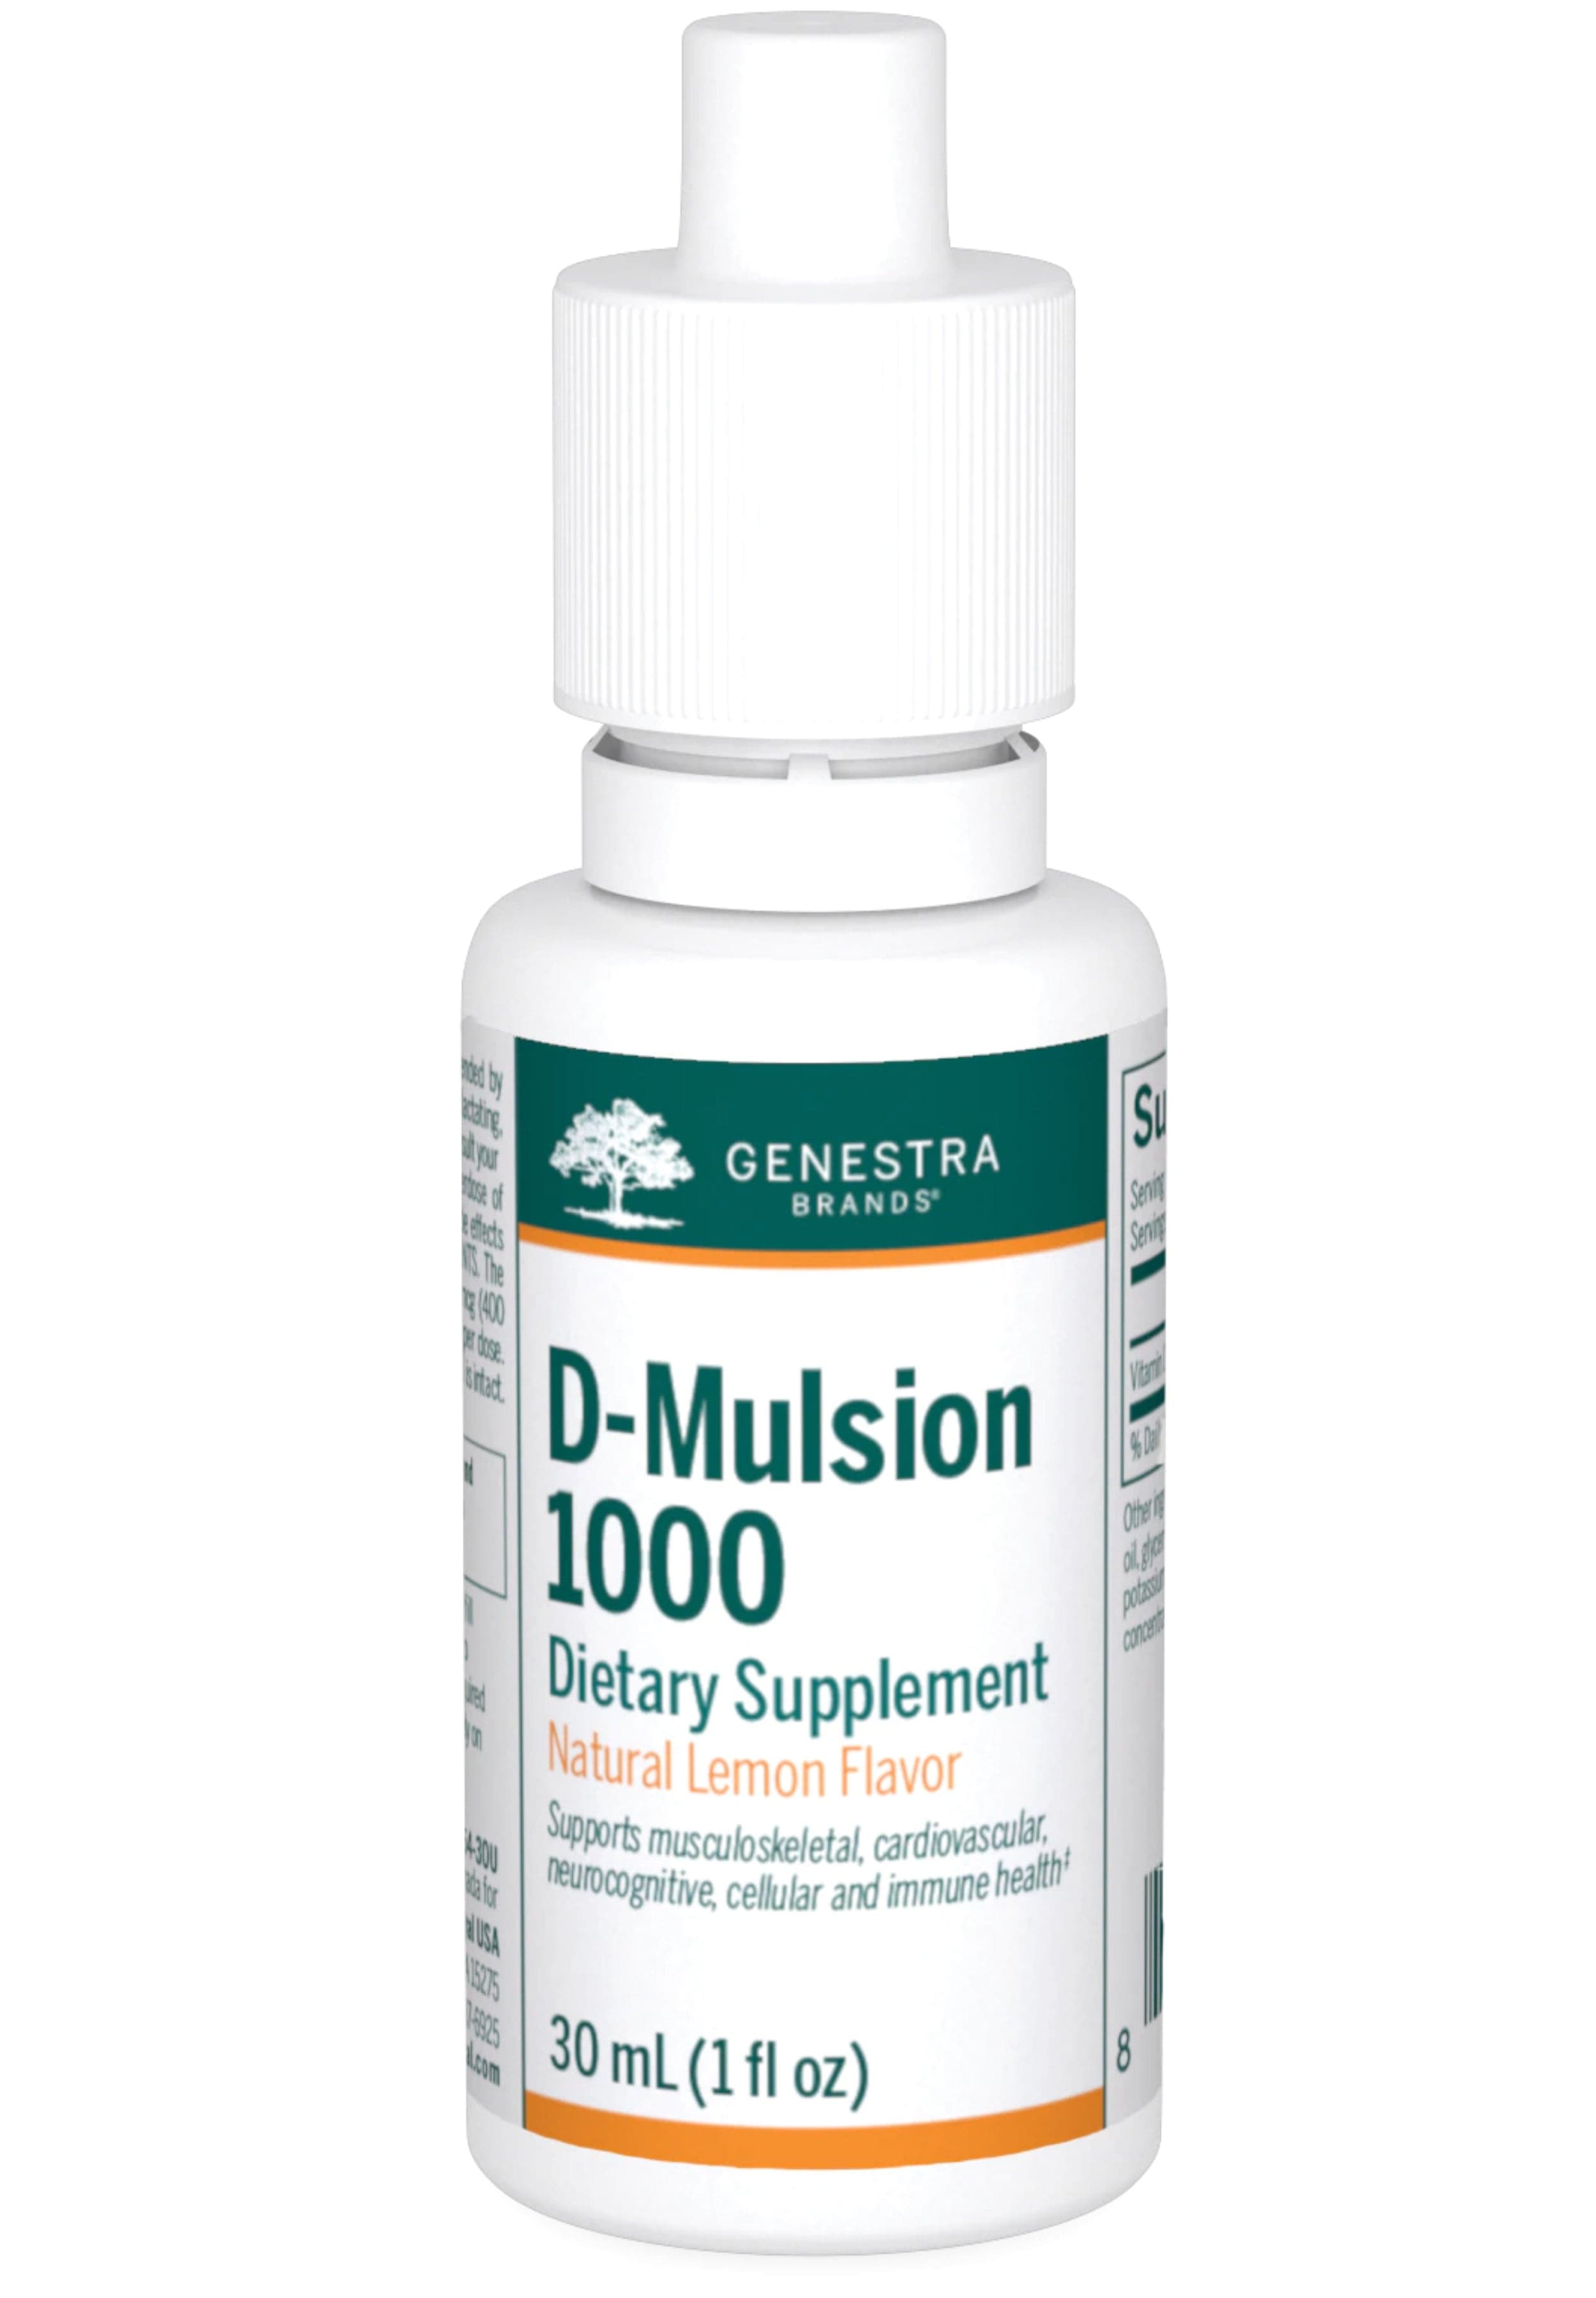 Genestra Brands D-Mulsion 1000